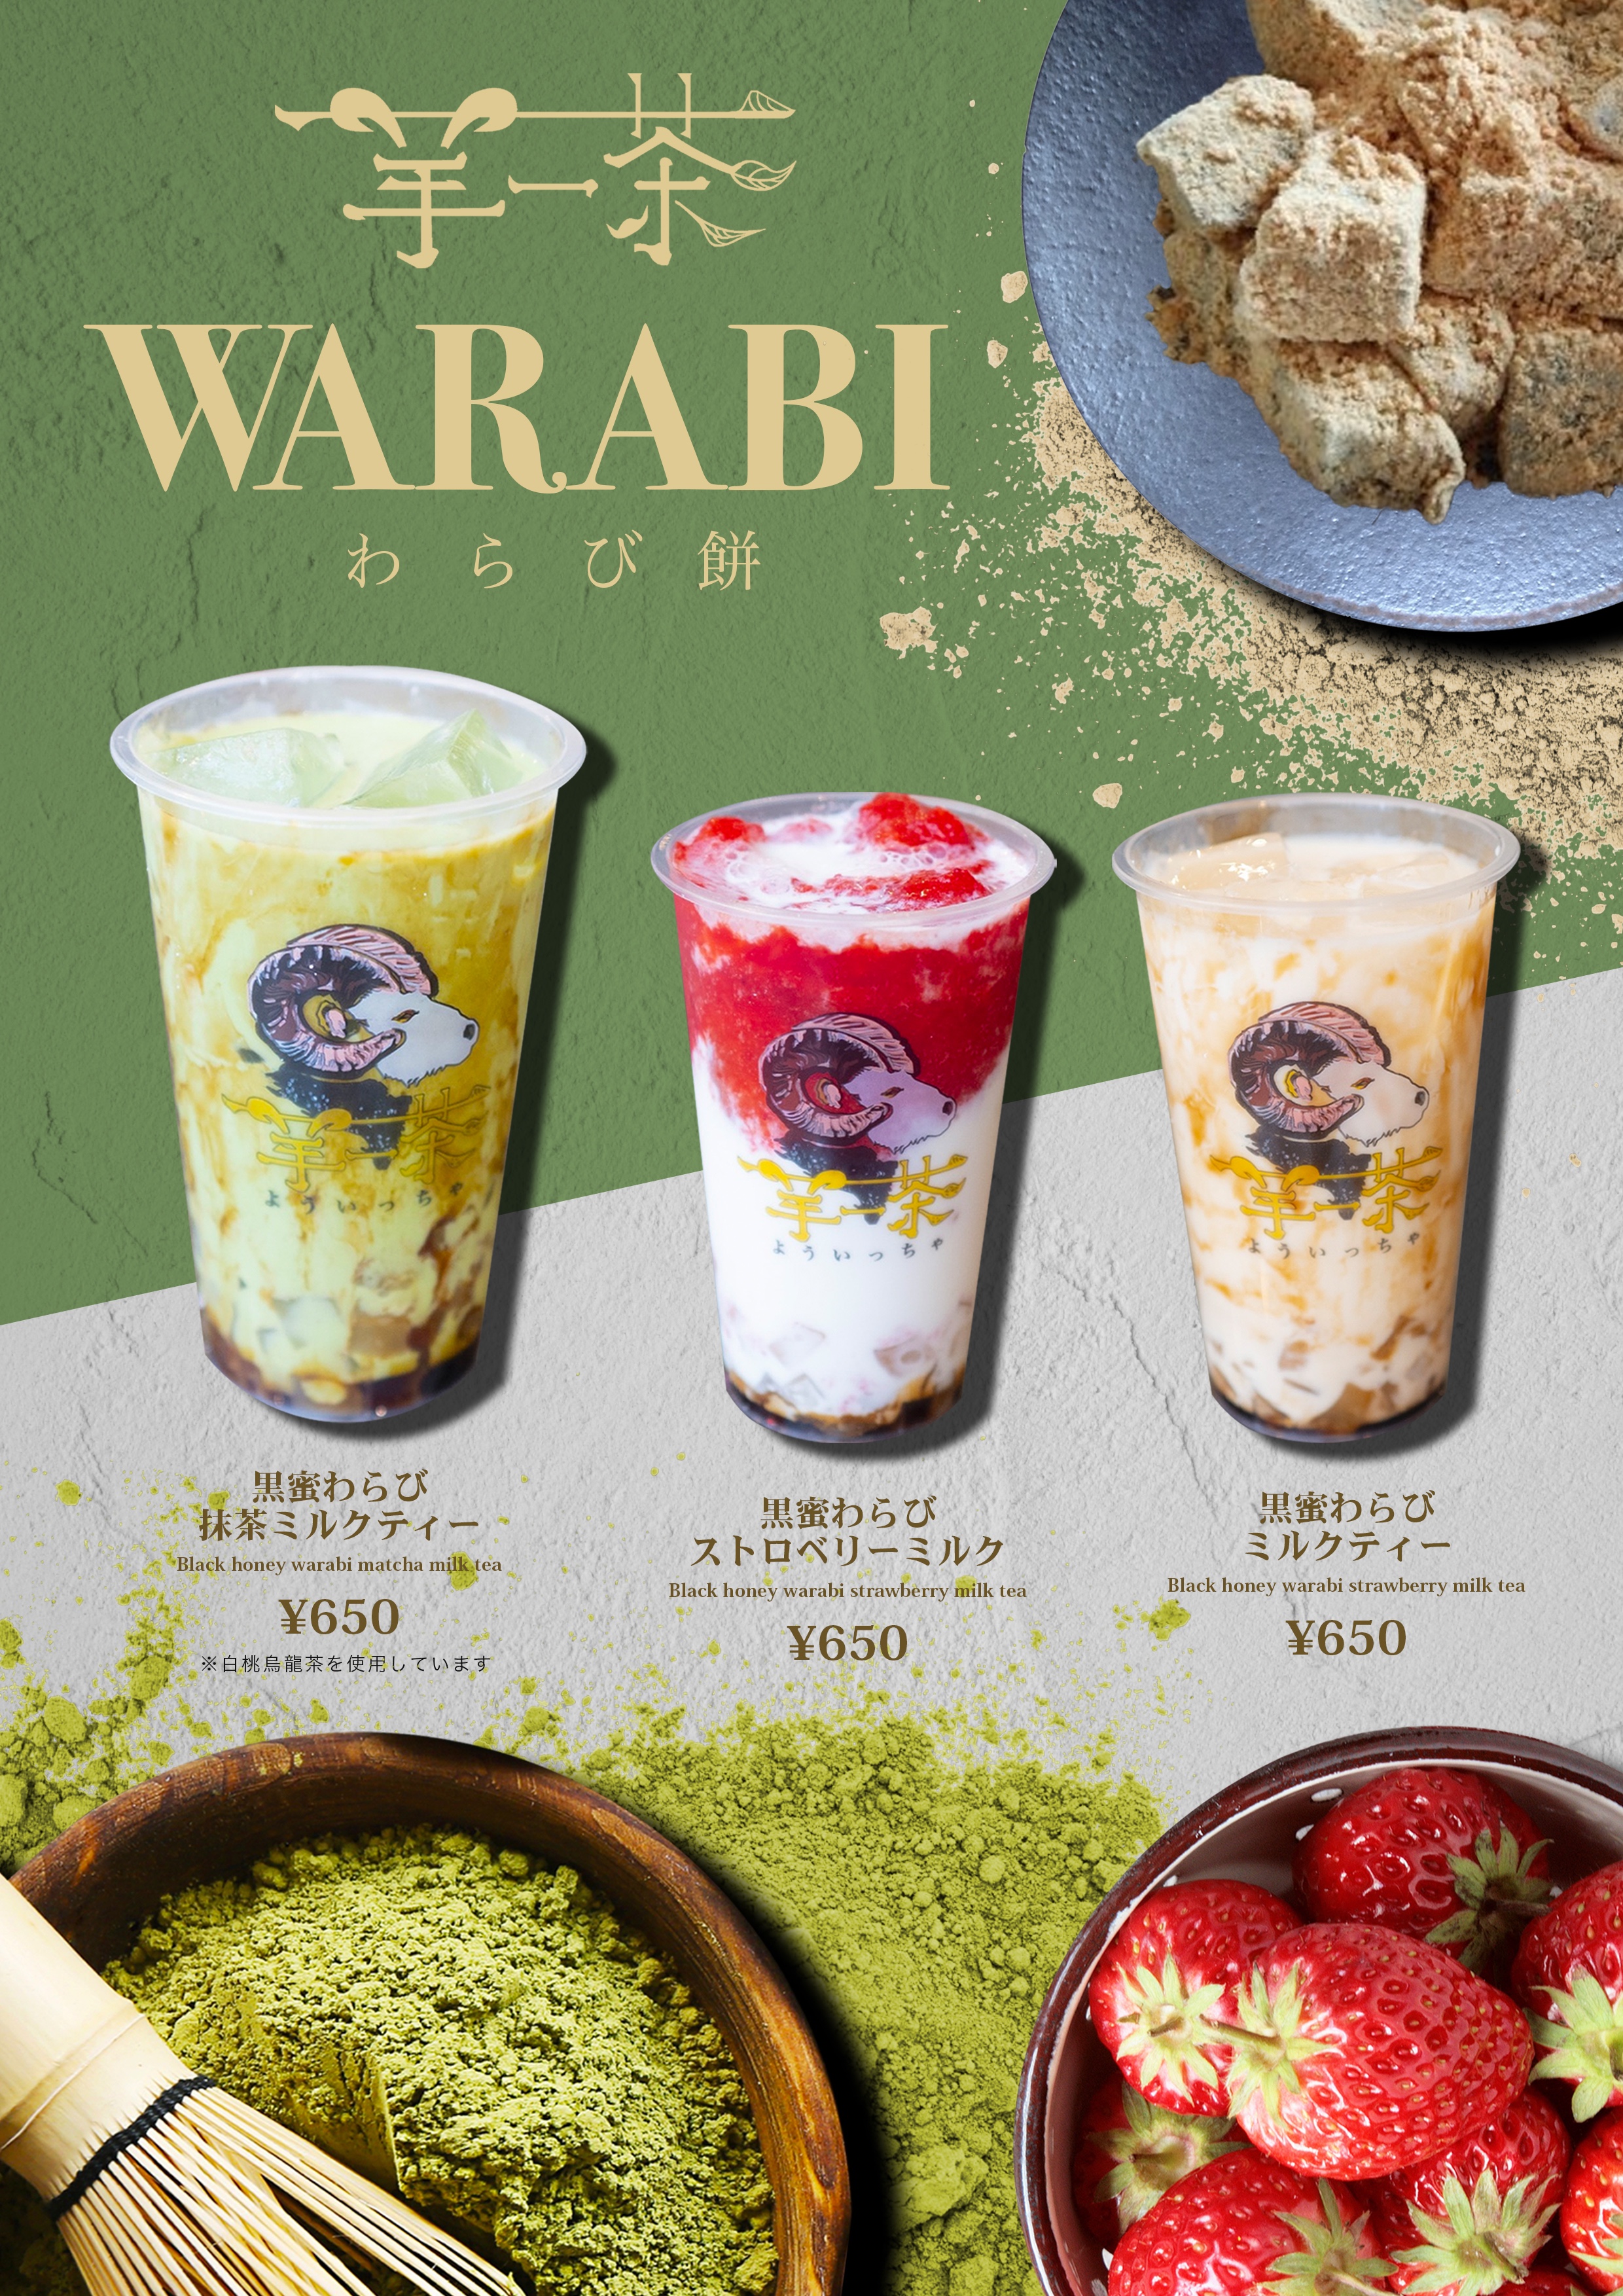 羊一茶 よういっちゃ わらび餅を使用したオリジナル Warabi Drink を3月日 金 から発売開始 合同会社switchhのプレスリリース